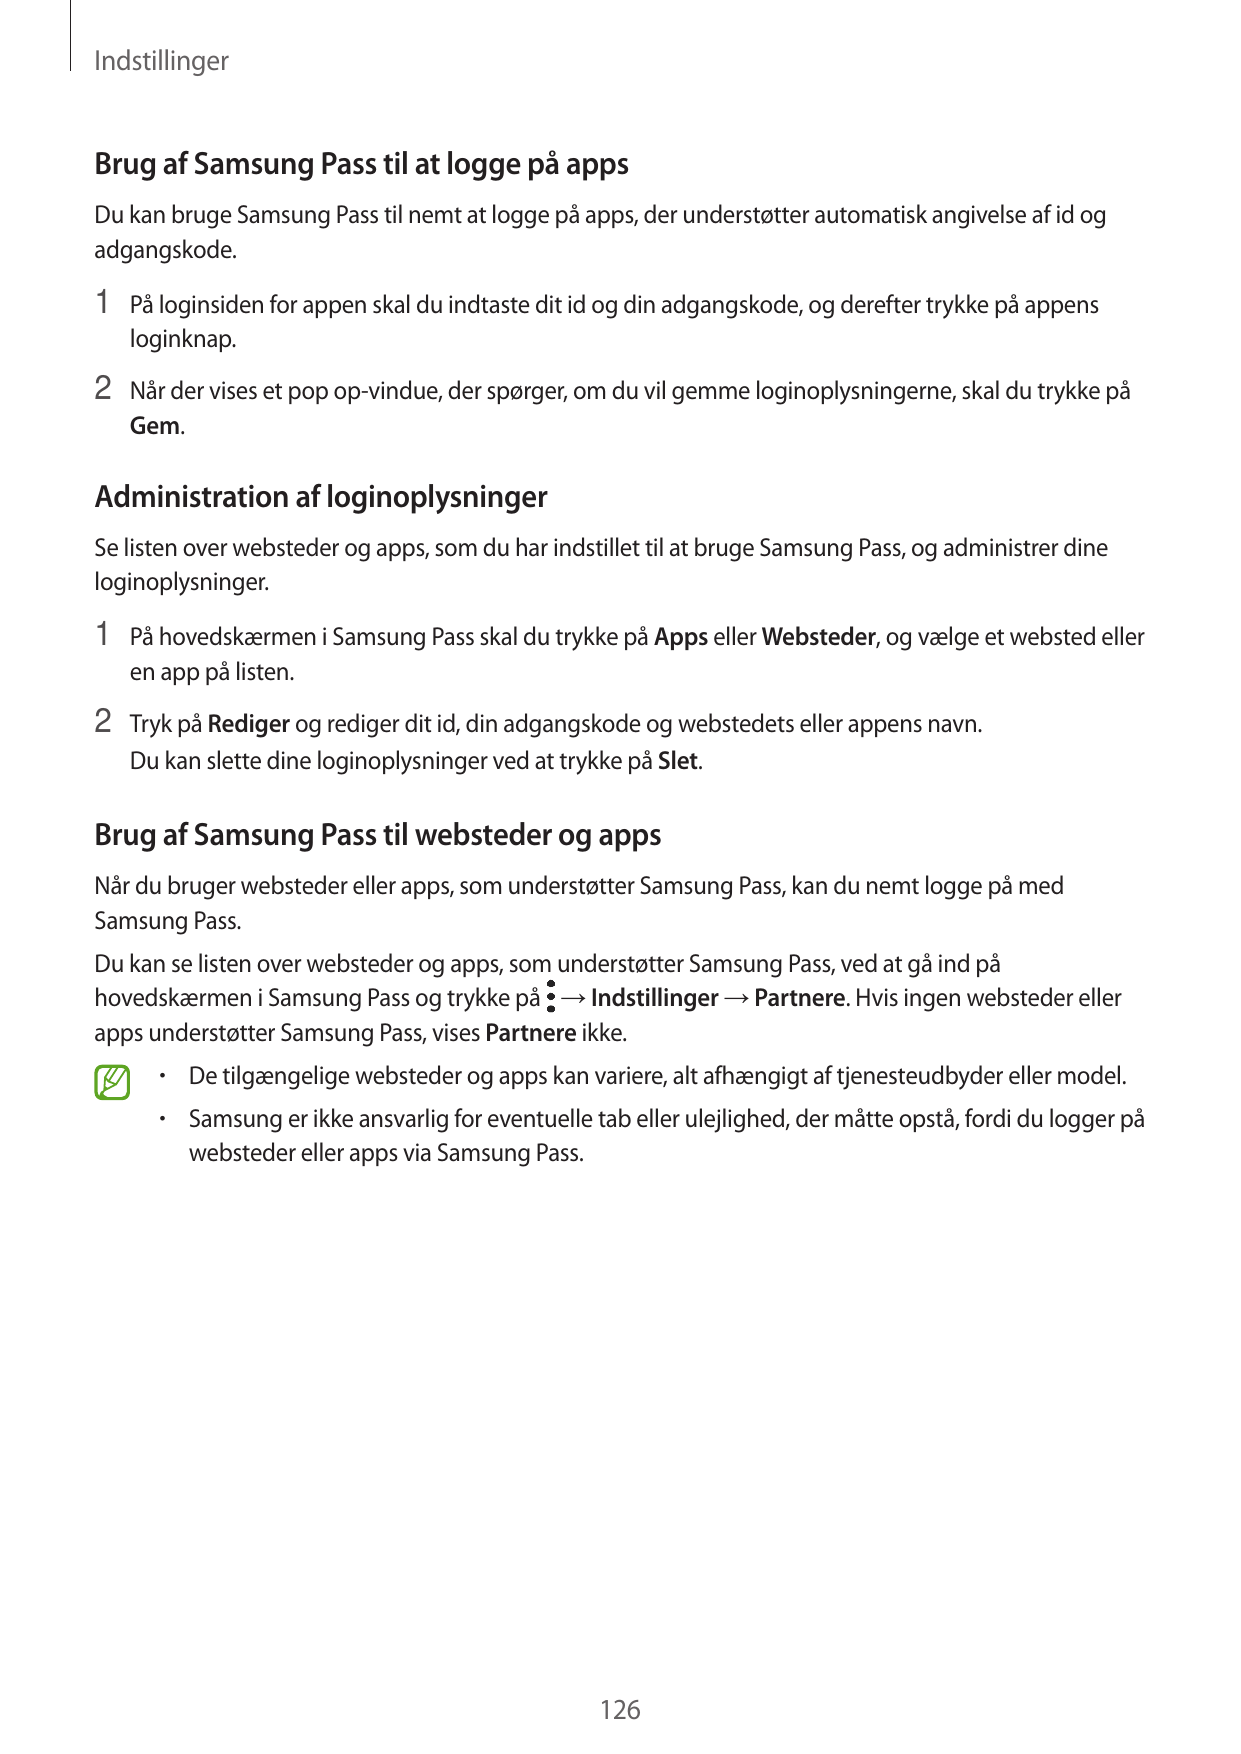 IndstillingerBrug af Samsung Pass til at logge på appsDu kan bruge Samsung Pass til nemt at logge på apps, der understøtter auto